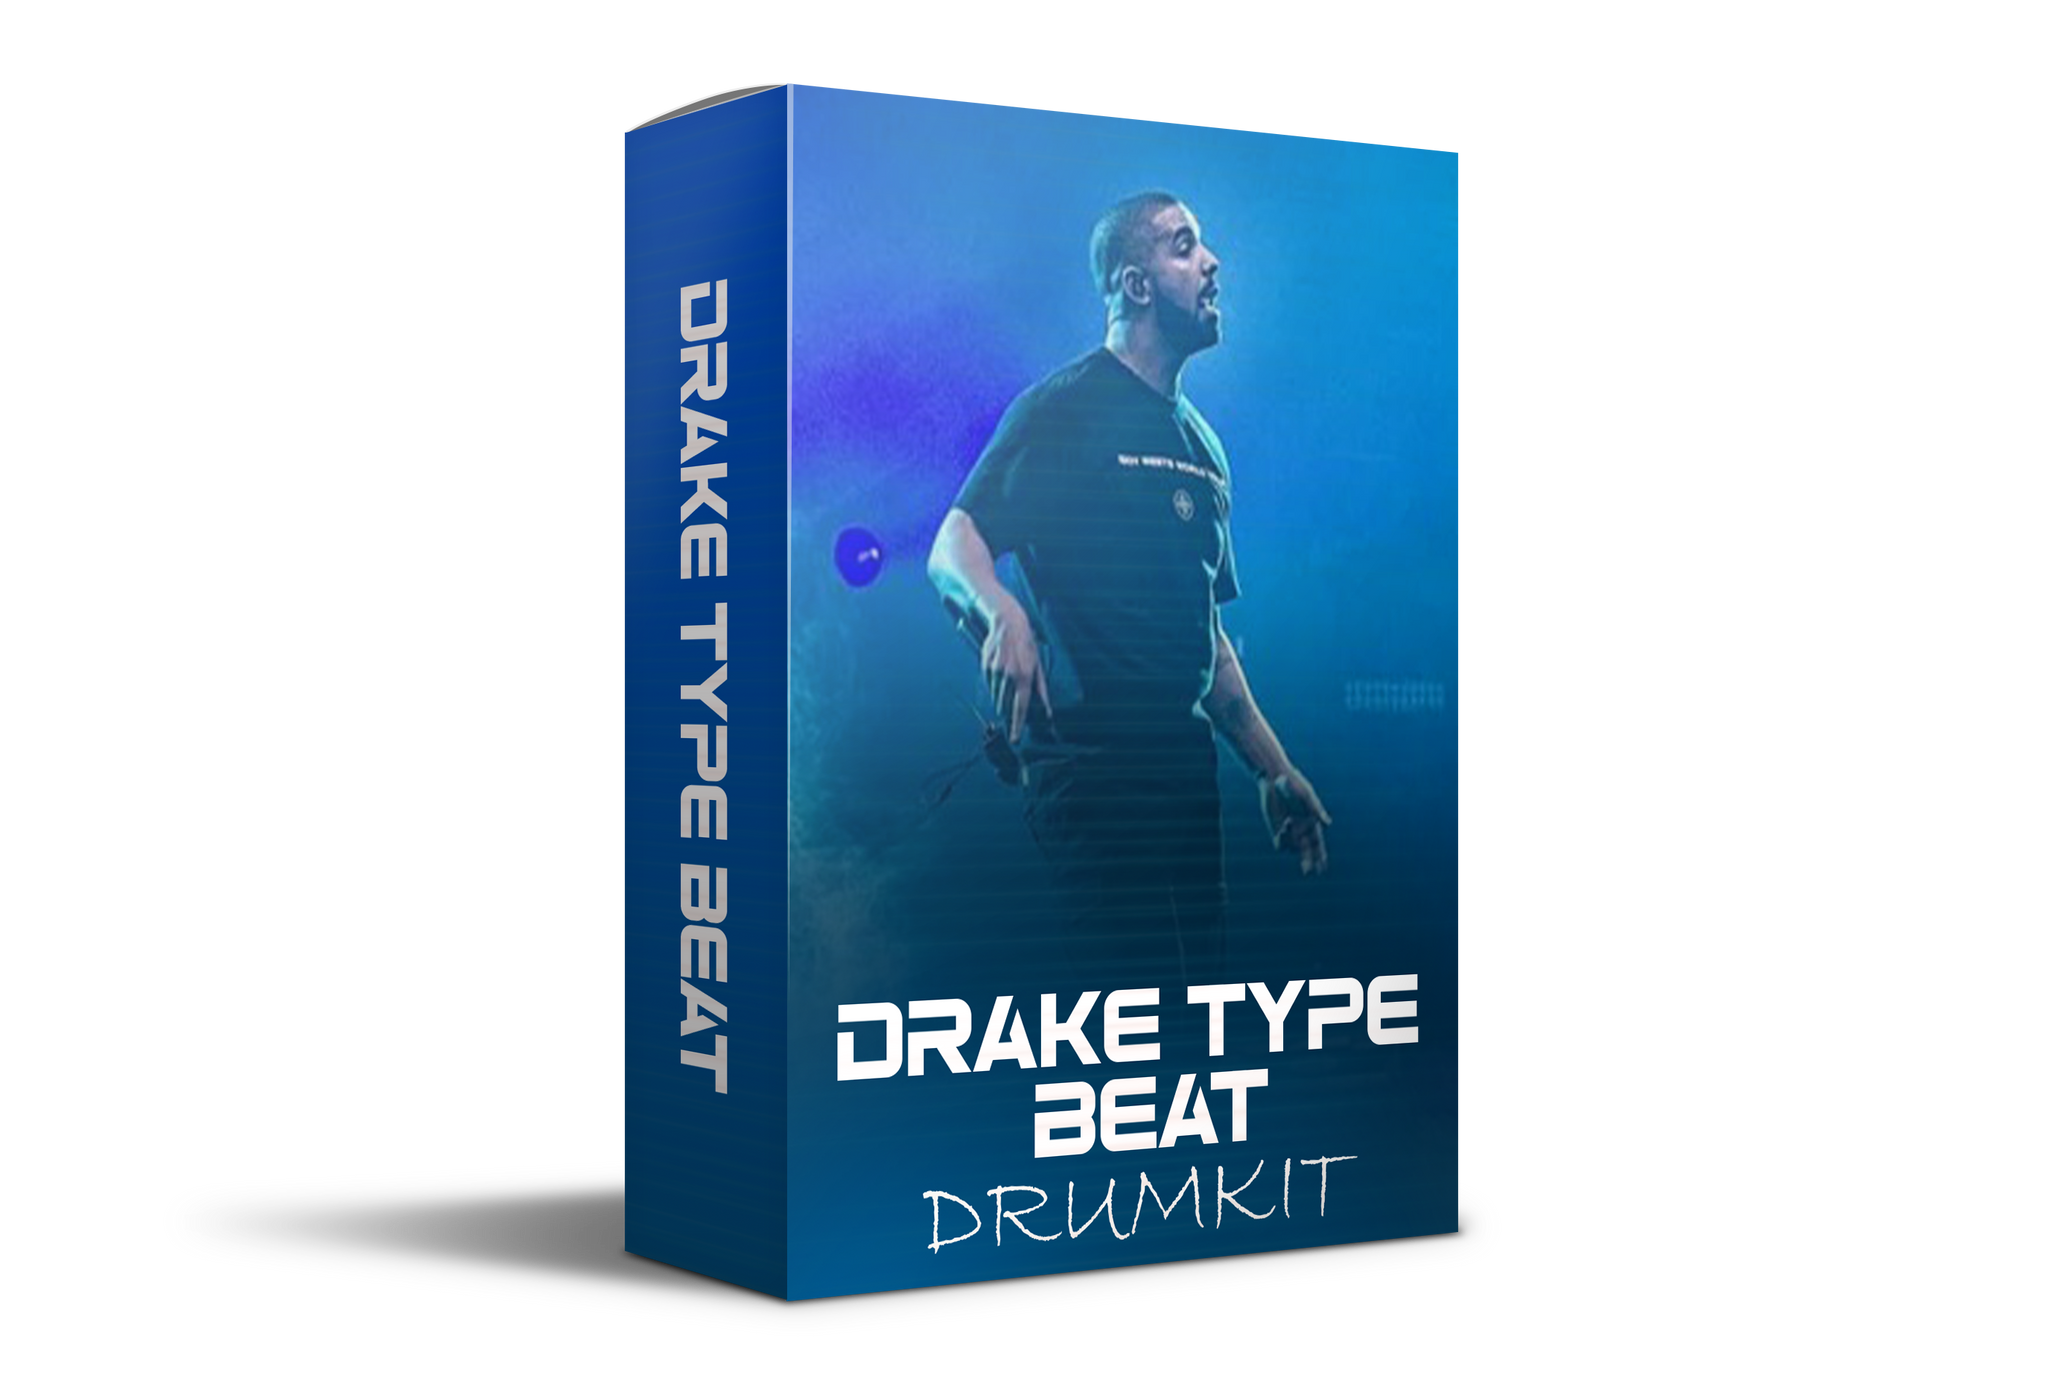 Drake Type Drumkit